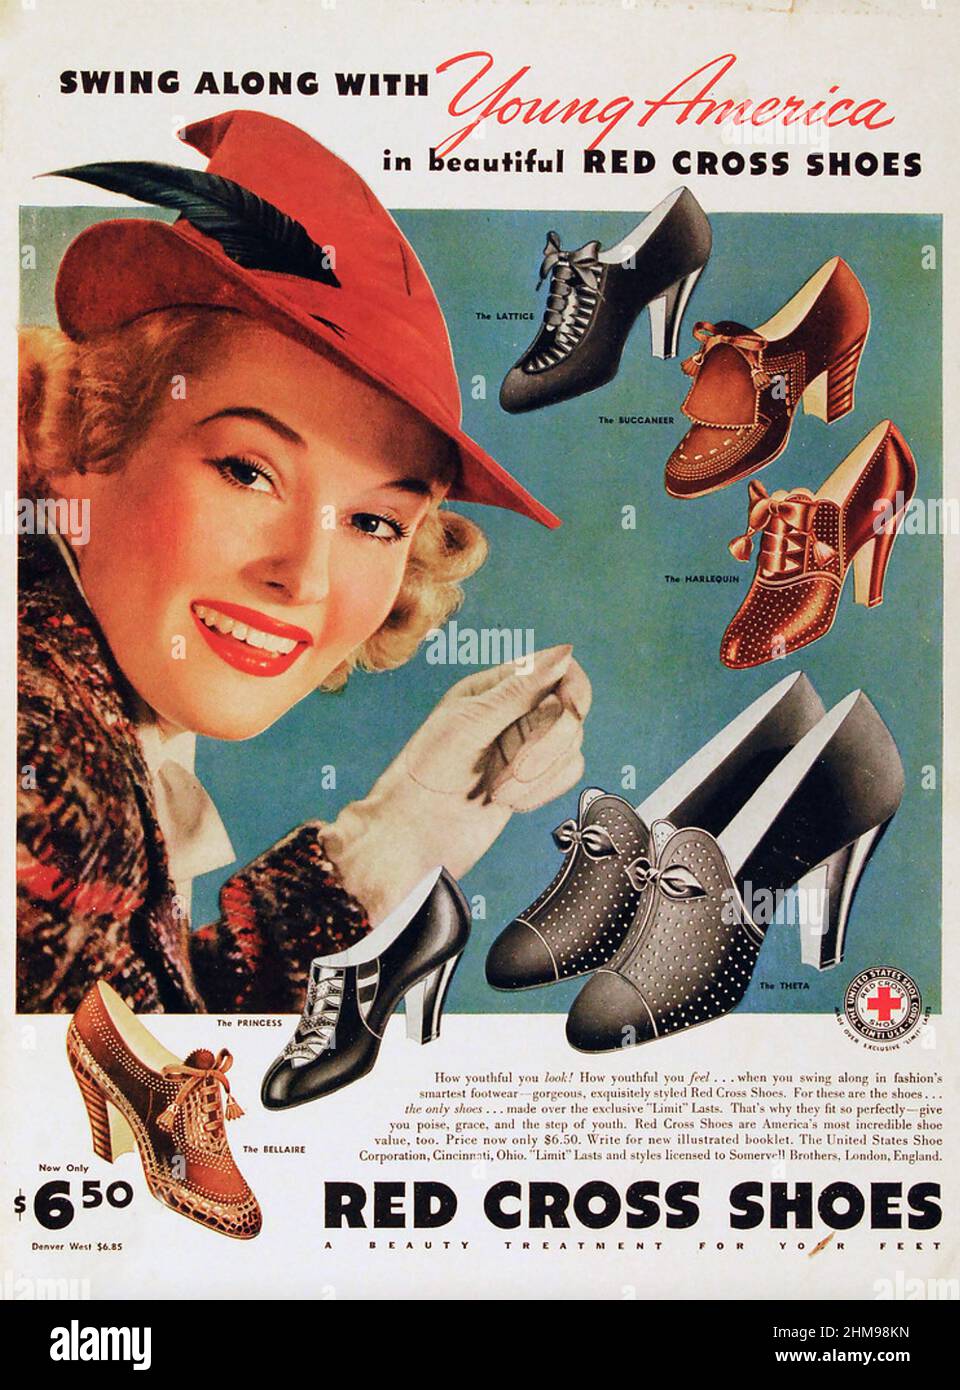 RED CROSS SHOES Une marque de United States Shoe Corporation dans une publicité de 1938. La compagnie a abandonné le nom au début de WW2 pour sauver la confusion avec la Croix-Rouge. Banque D'Images